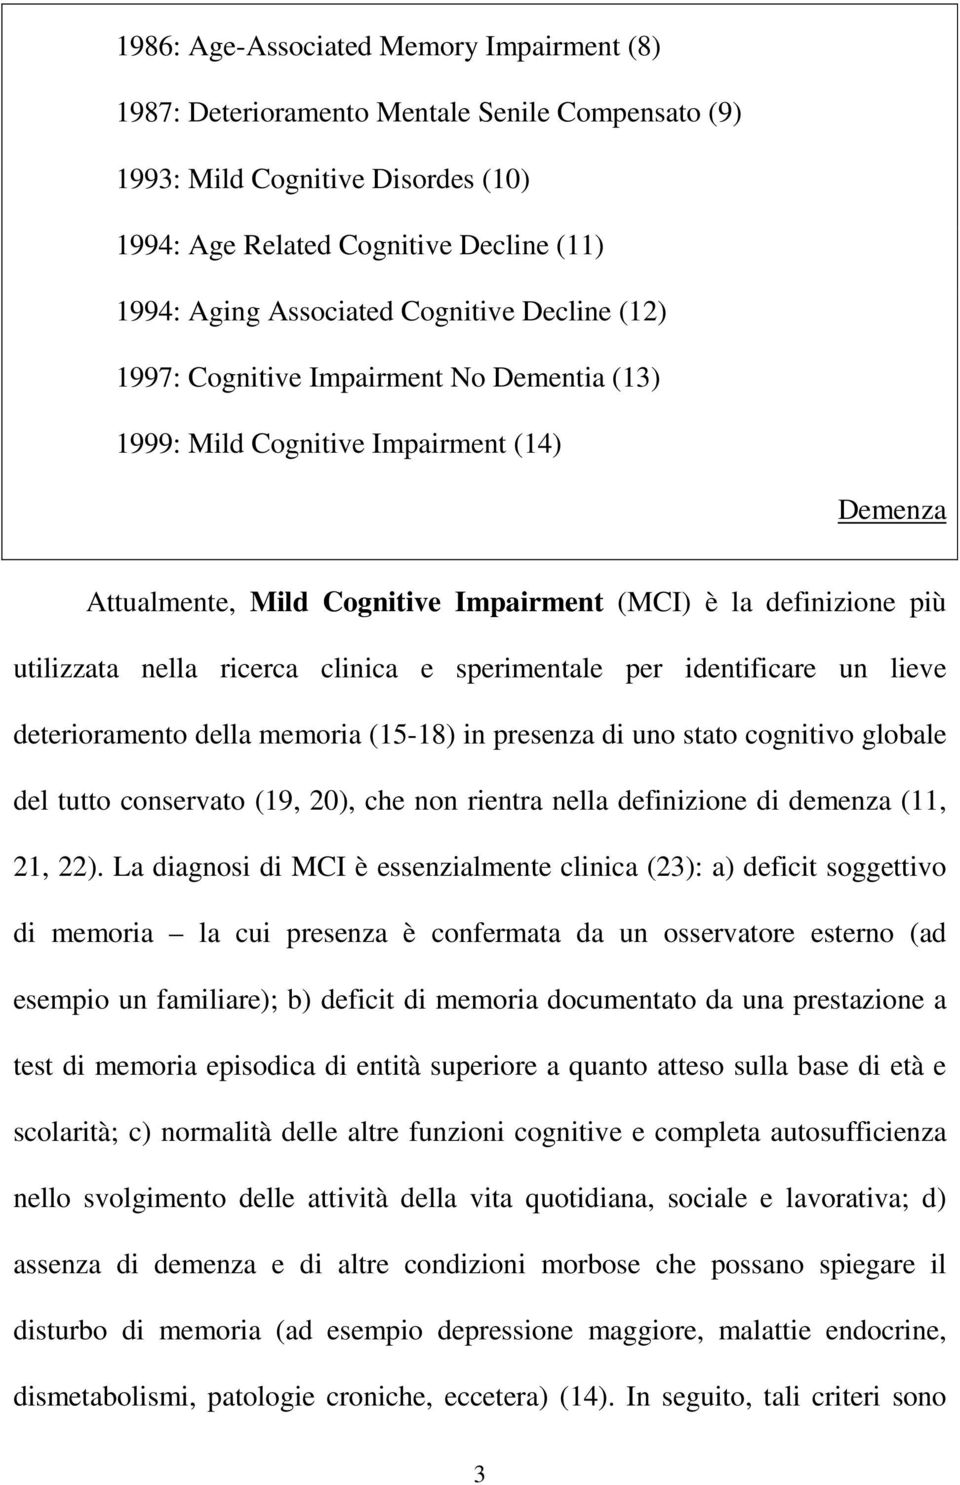 ricerca clinica e sperimentale per identificare un lieve deterioramento della memoria (15-18) in presenza di uno stato cognitivo globale del tutto conservato (19, 20), che non rientra nella